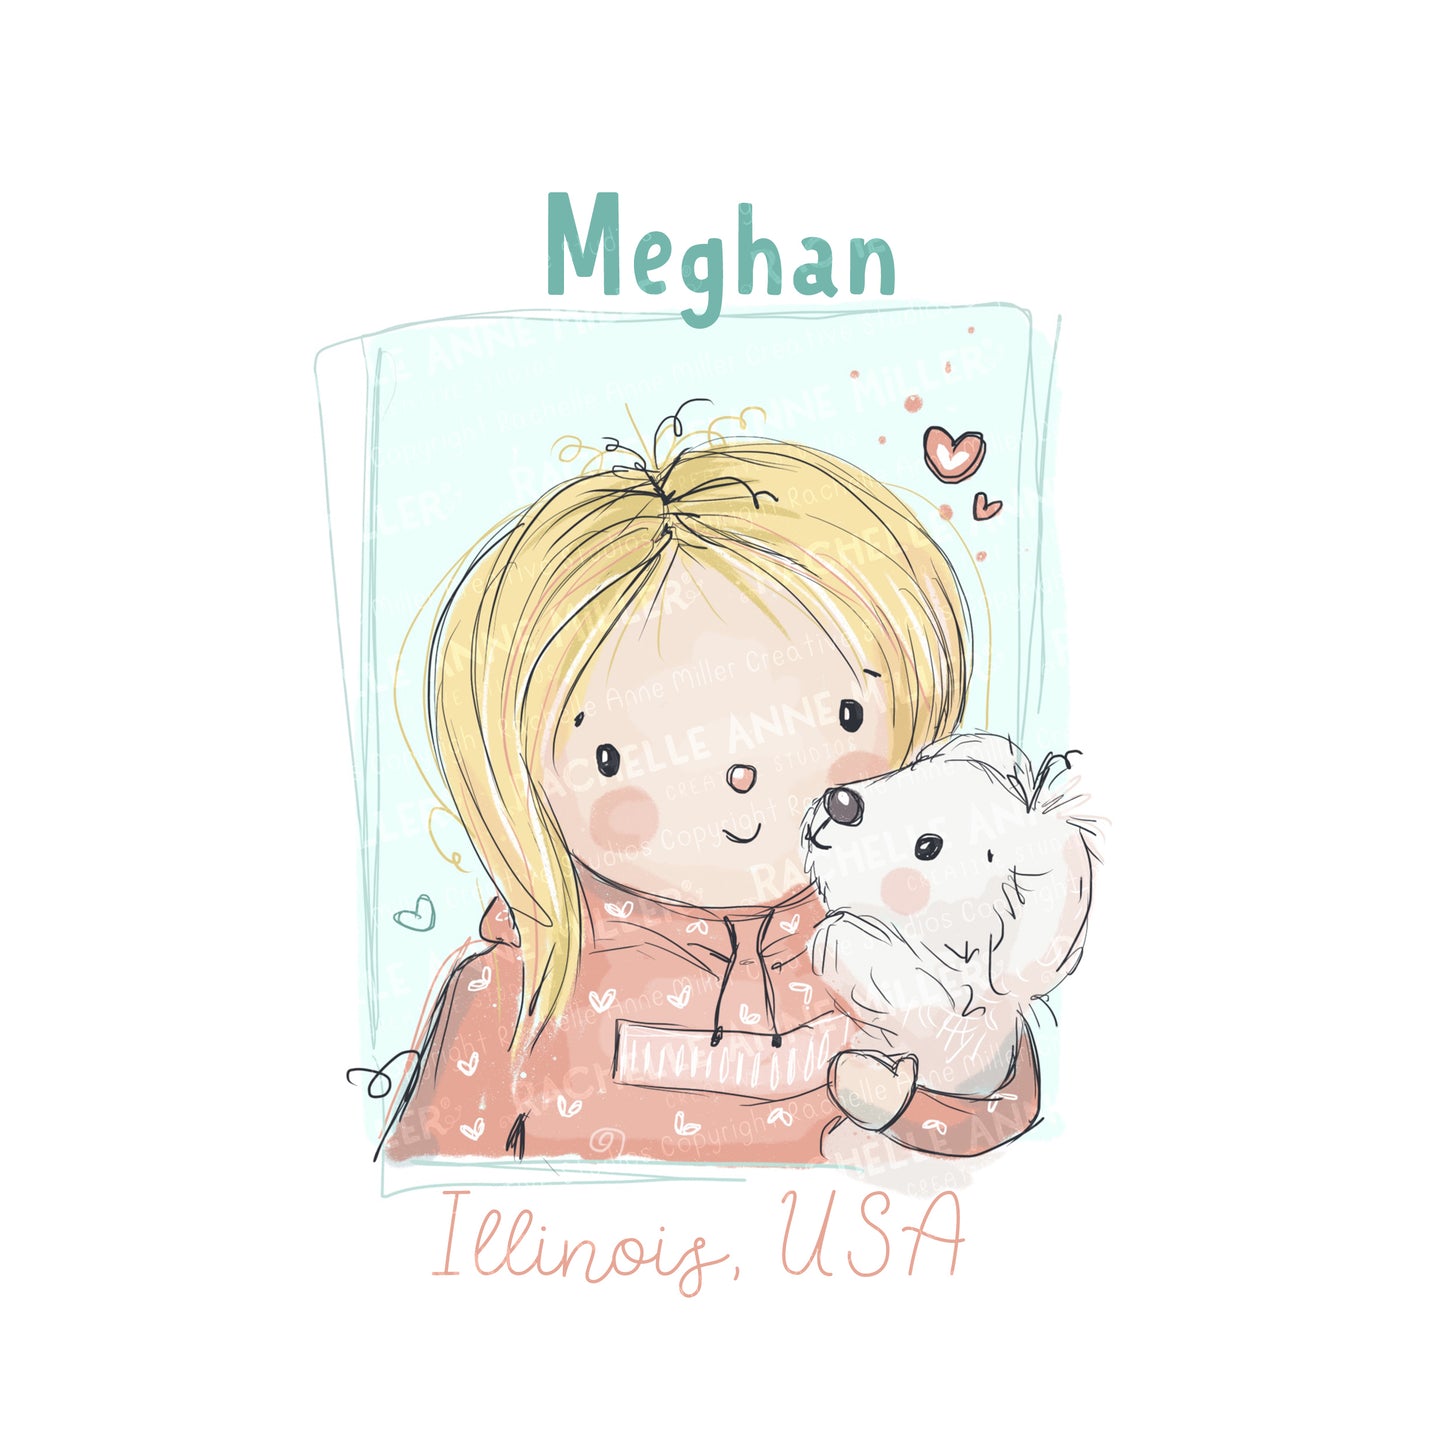 'Meghan's Cuddler' Profile Digital Stamp